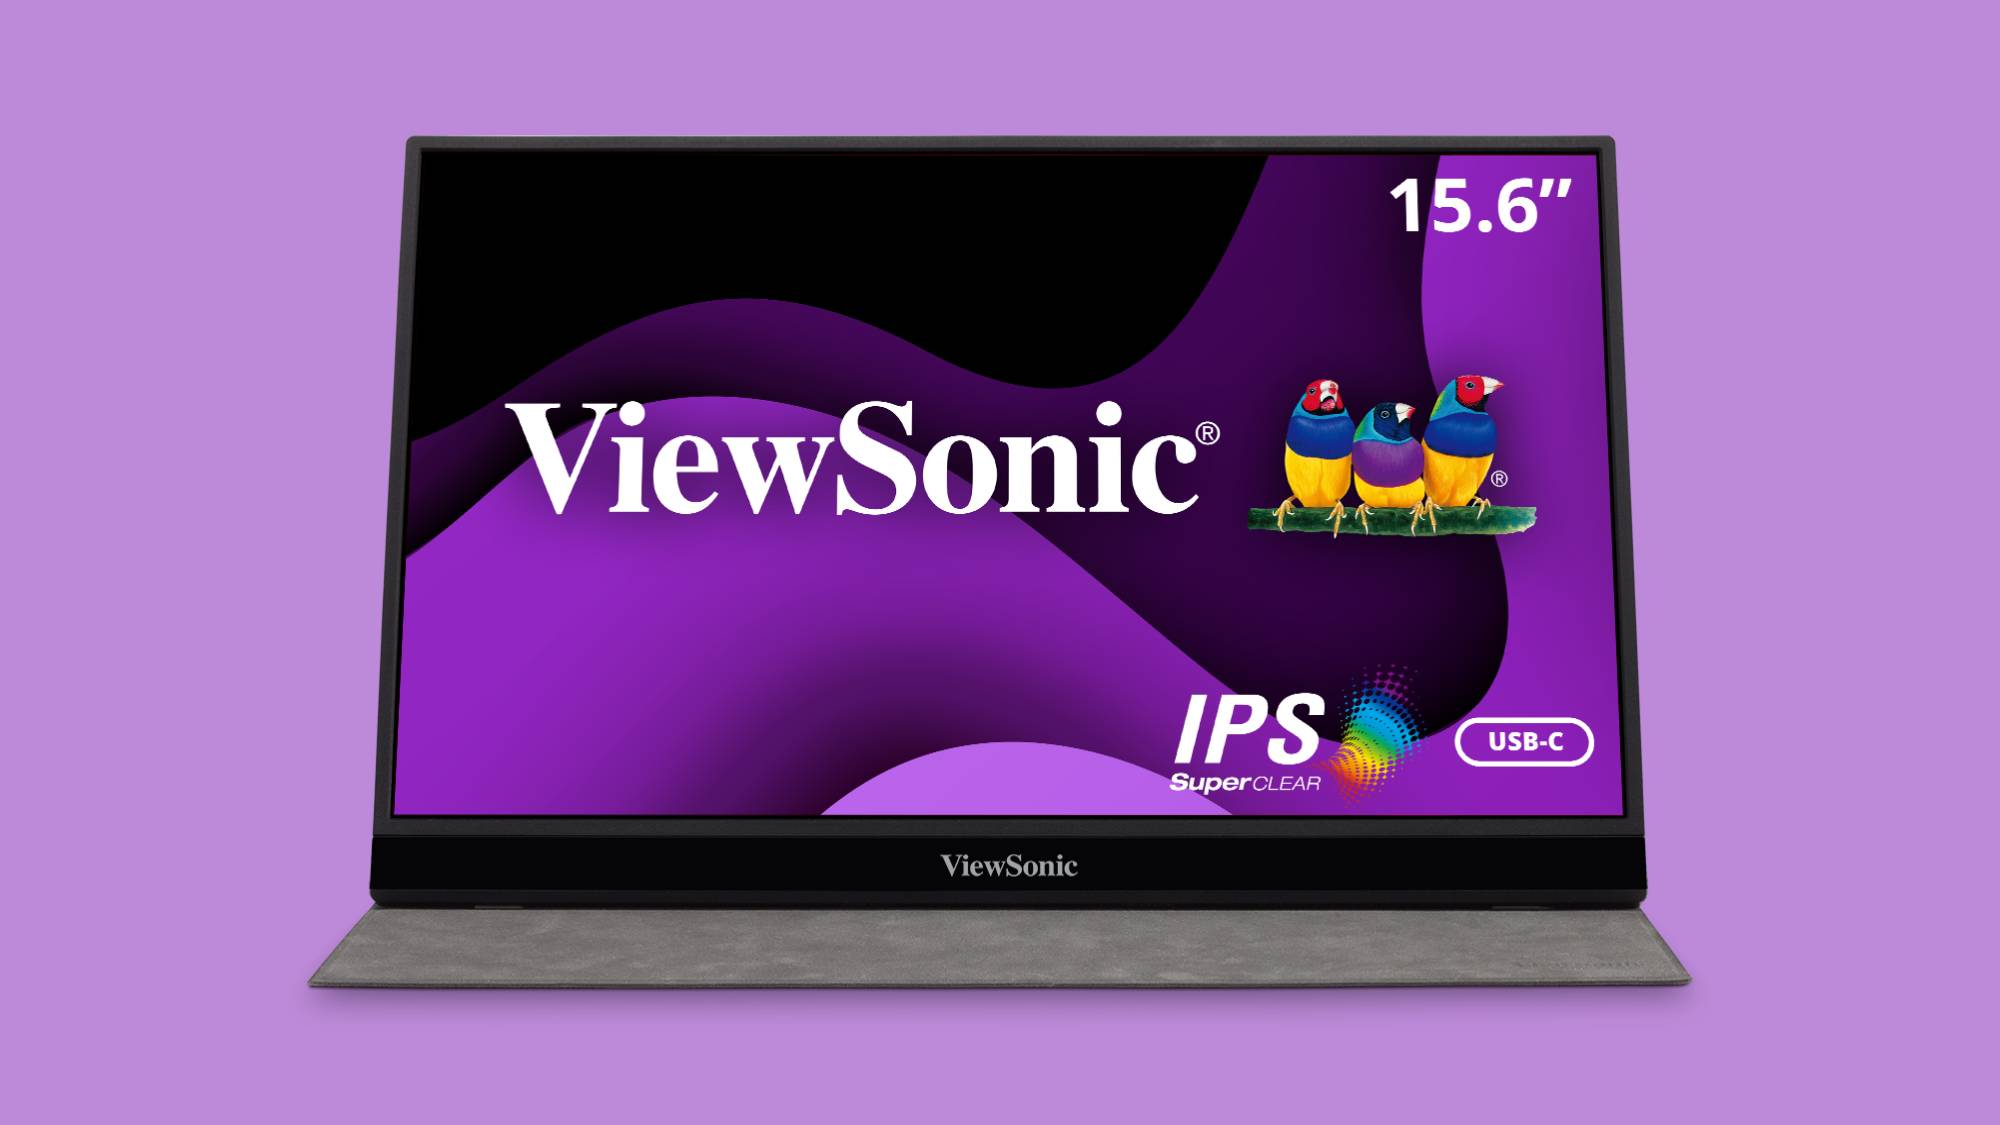 ViewSonic VG1655 portable monitor